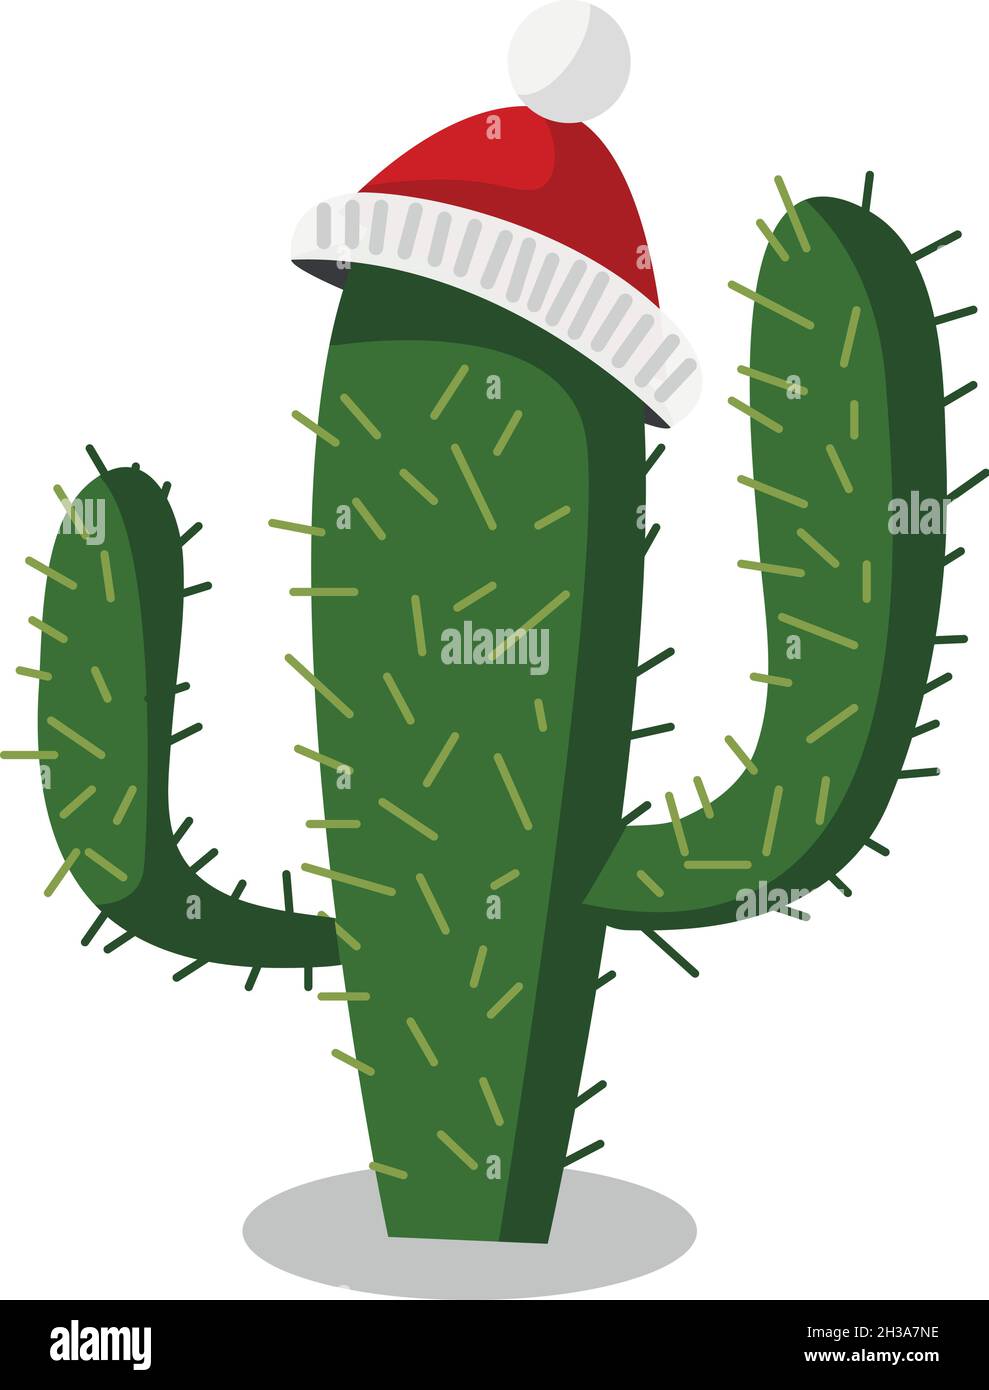 Cactus navideños y suculentas saguaro espinosas mexicanas con sombreros de  papá noel, ícono vectorial peyote y